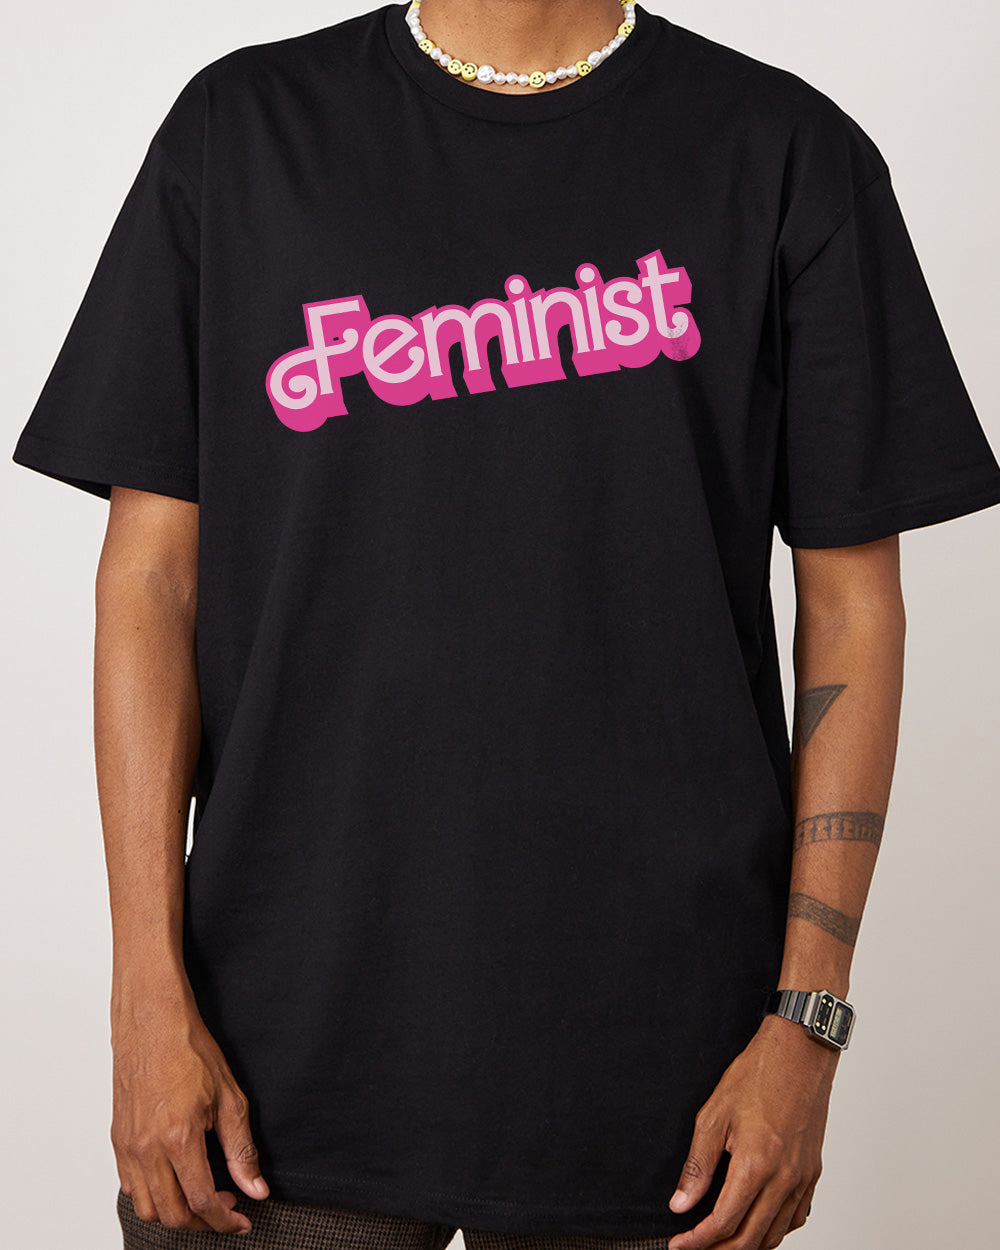 Feminist T-Shirt Europe Online